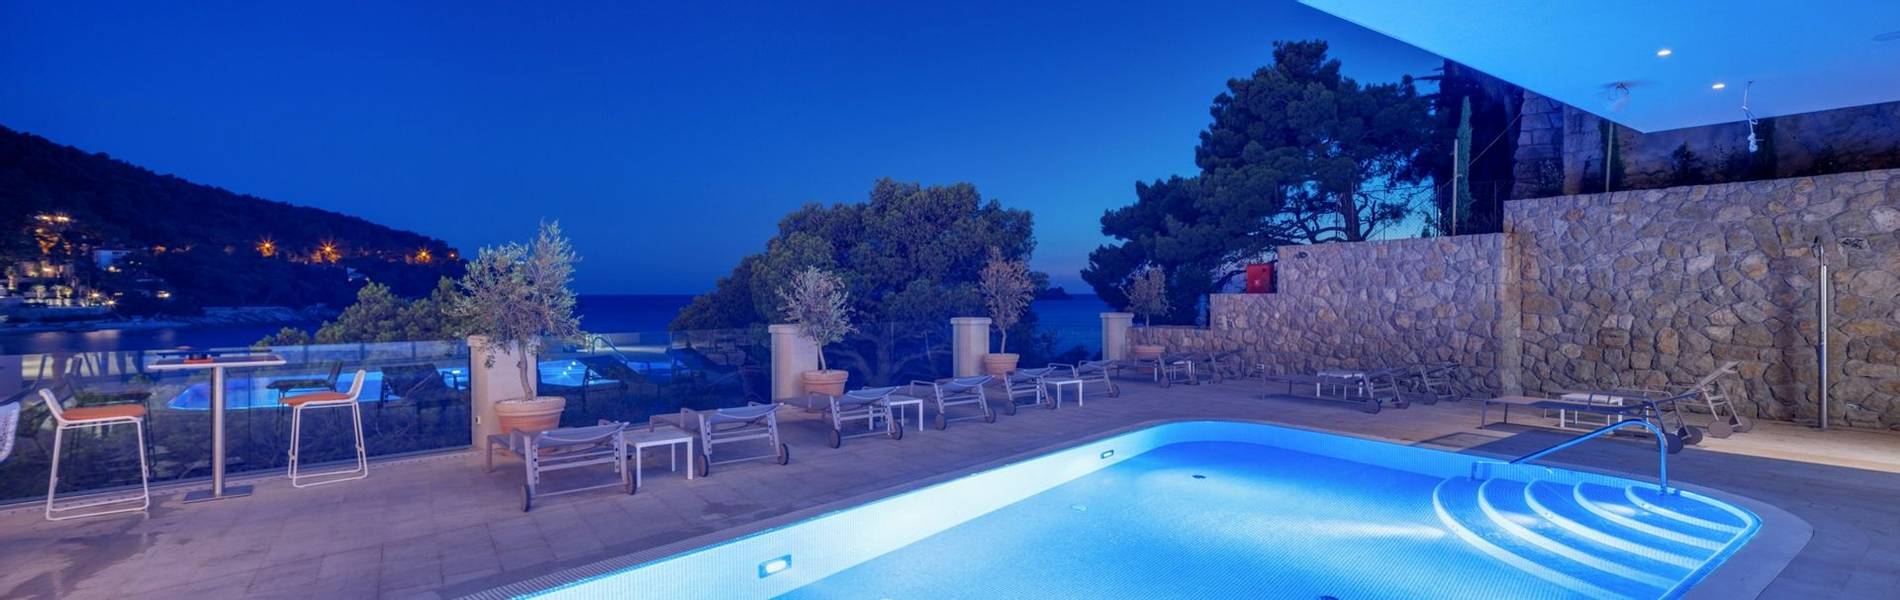 Hotel More, Dubrovnik, Croatia (57).jpg